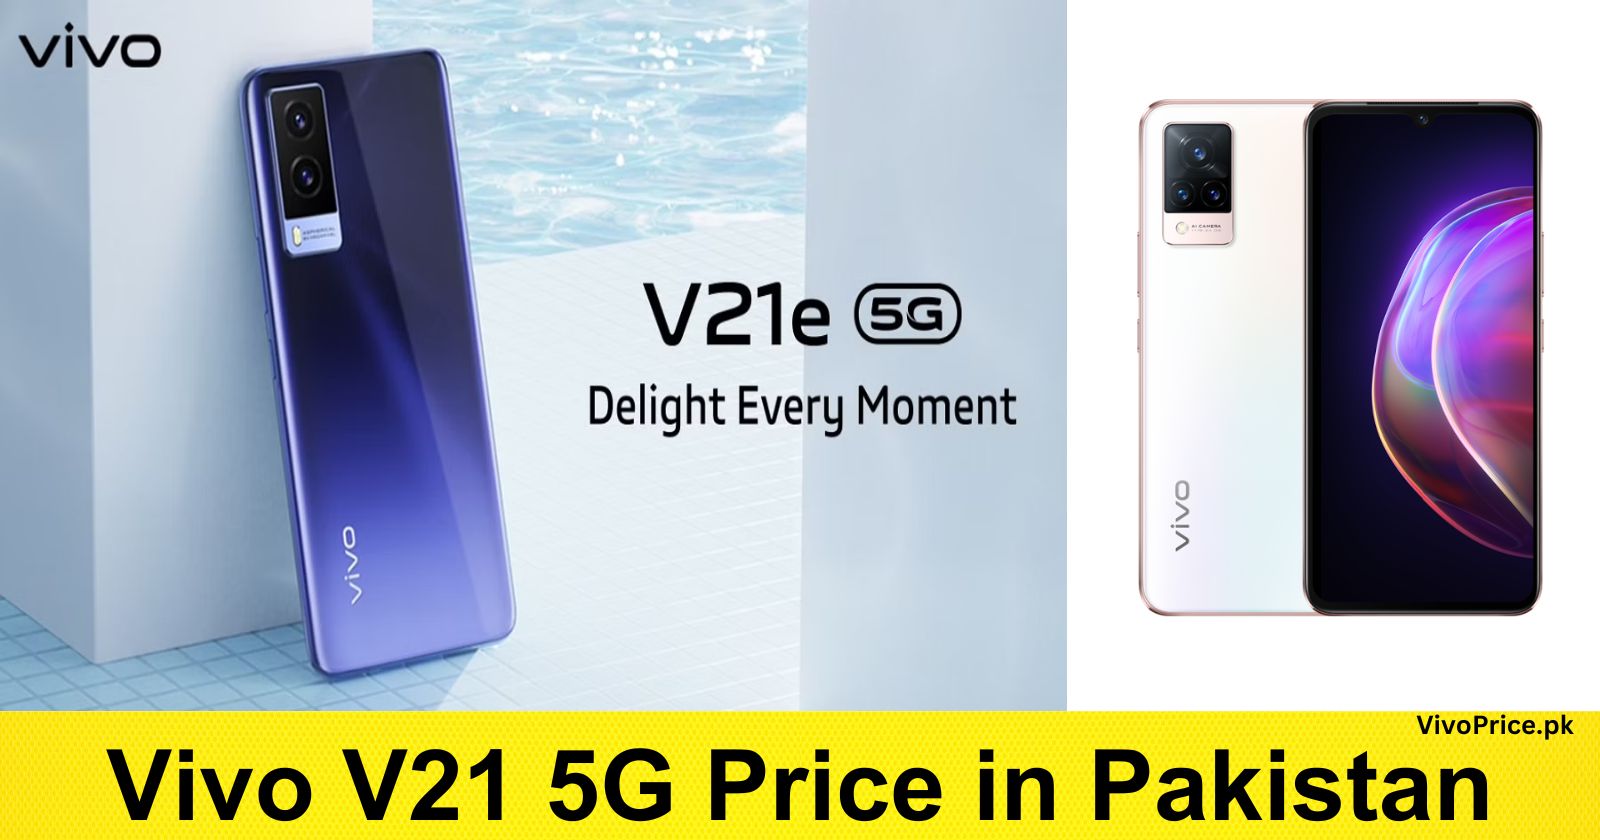 Vivo V21 5G Price in Pakistan | VivoPrice.pk